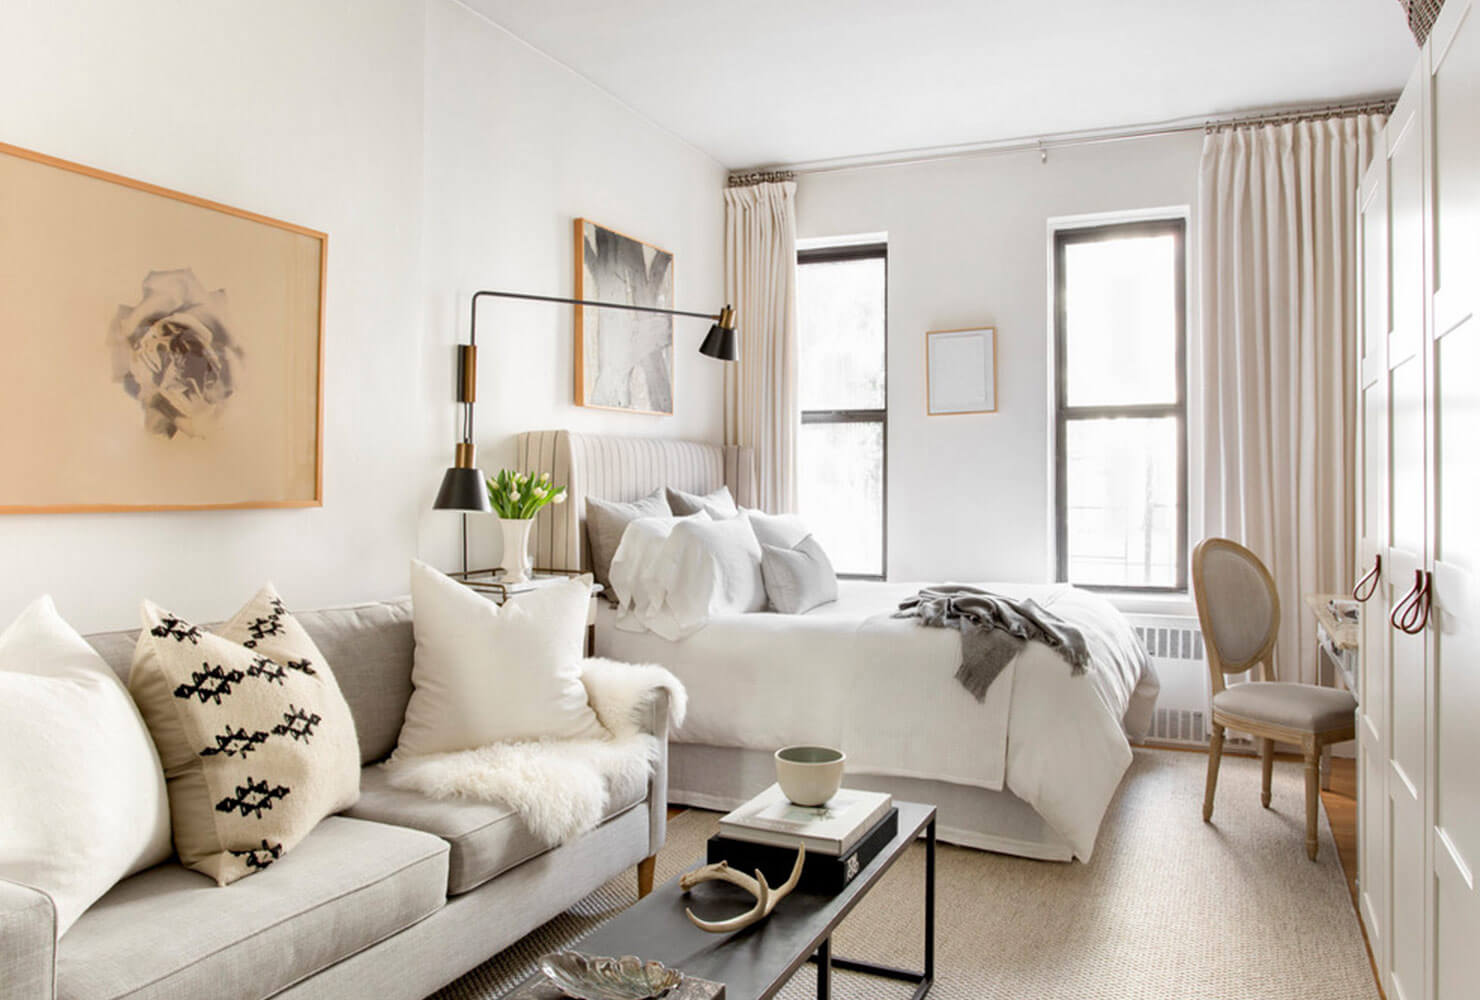 35 Apartment Living Room Ideas To Inspire Your Design Laptrinhx News